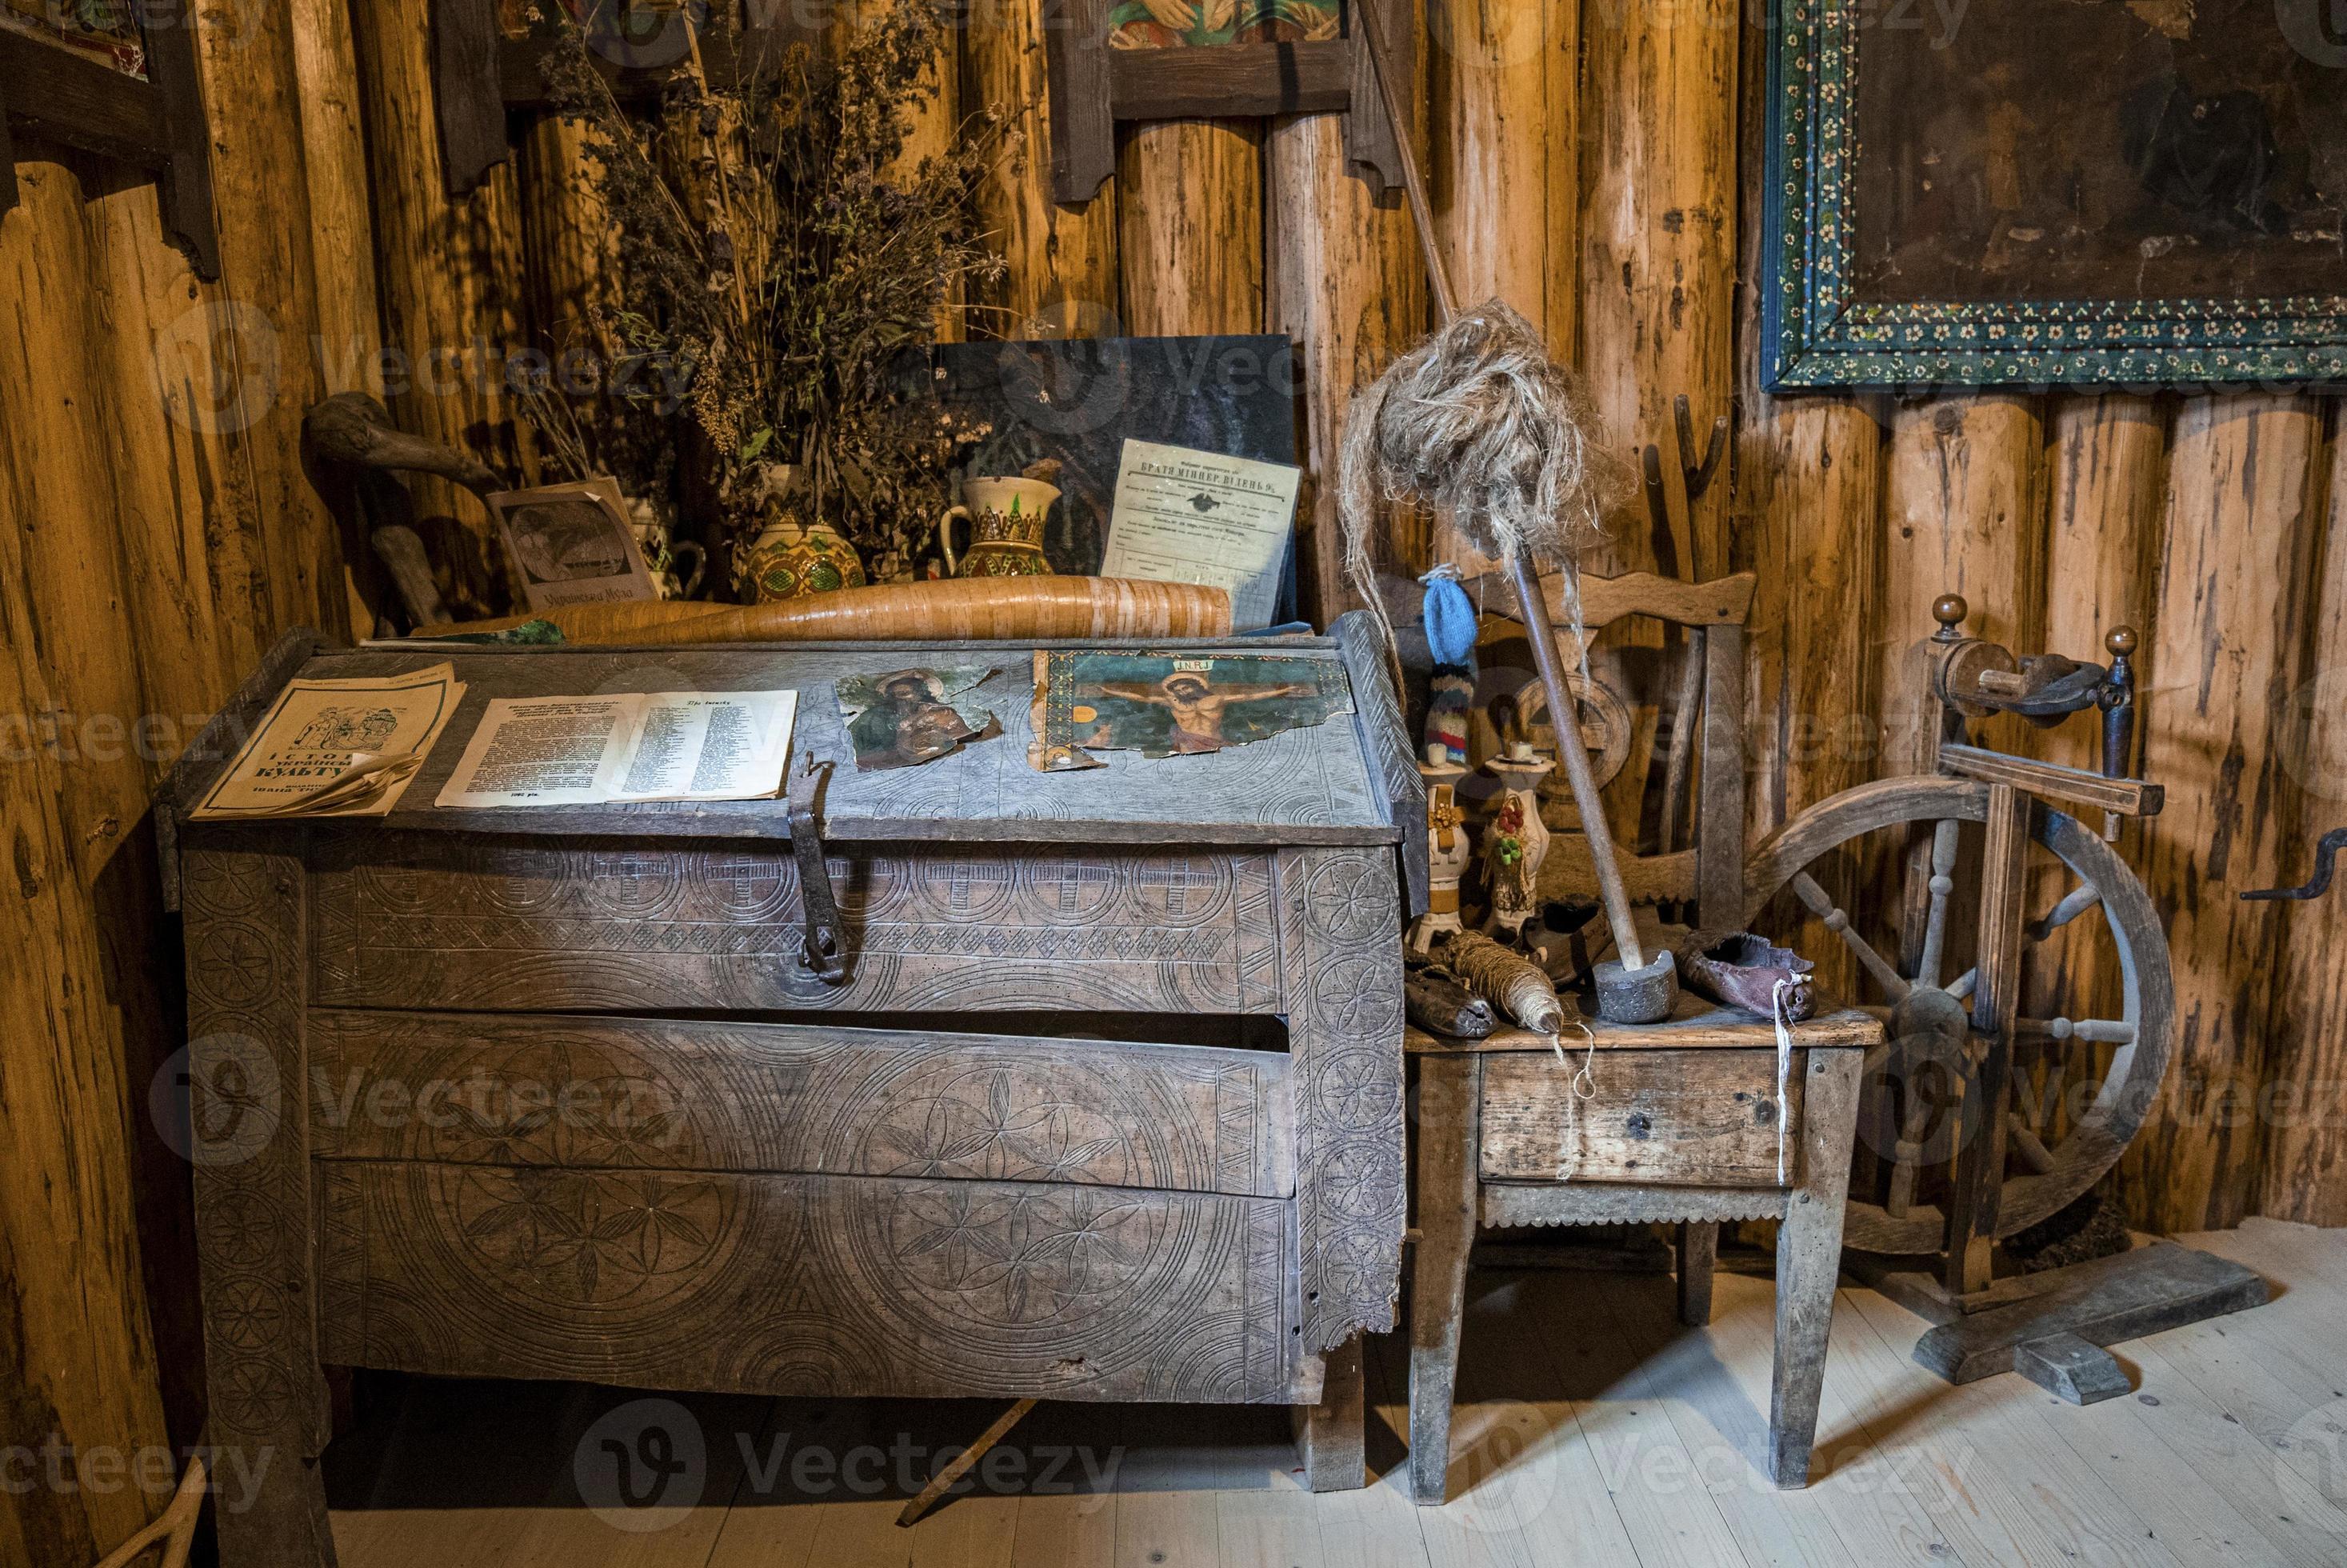 Brouwerij werper strip gesloten kist met antiek gereedschap op houten stoel in verlaten kamer  6014044 stockfoto bij Vecteezy